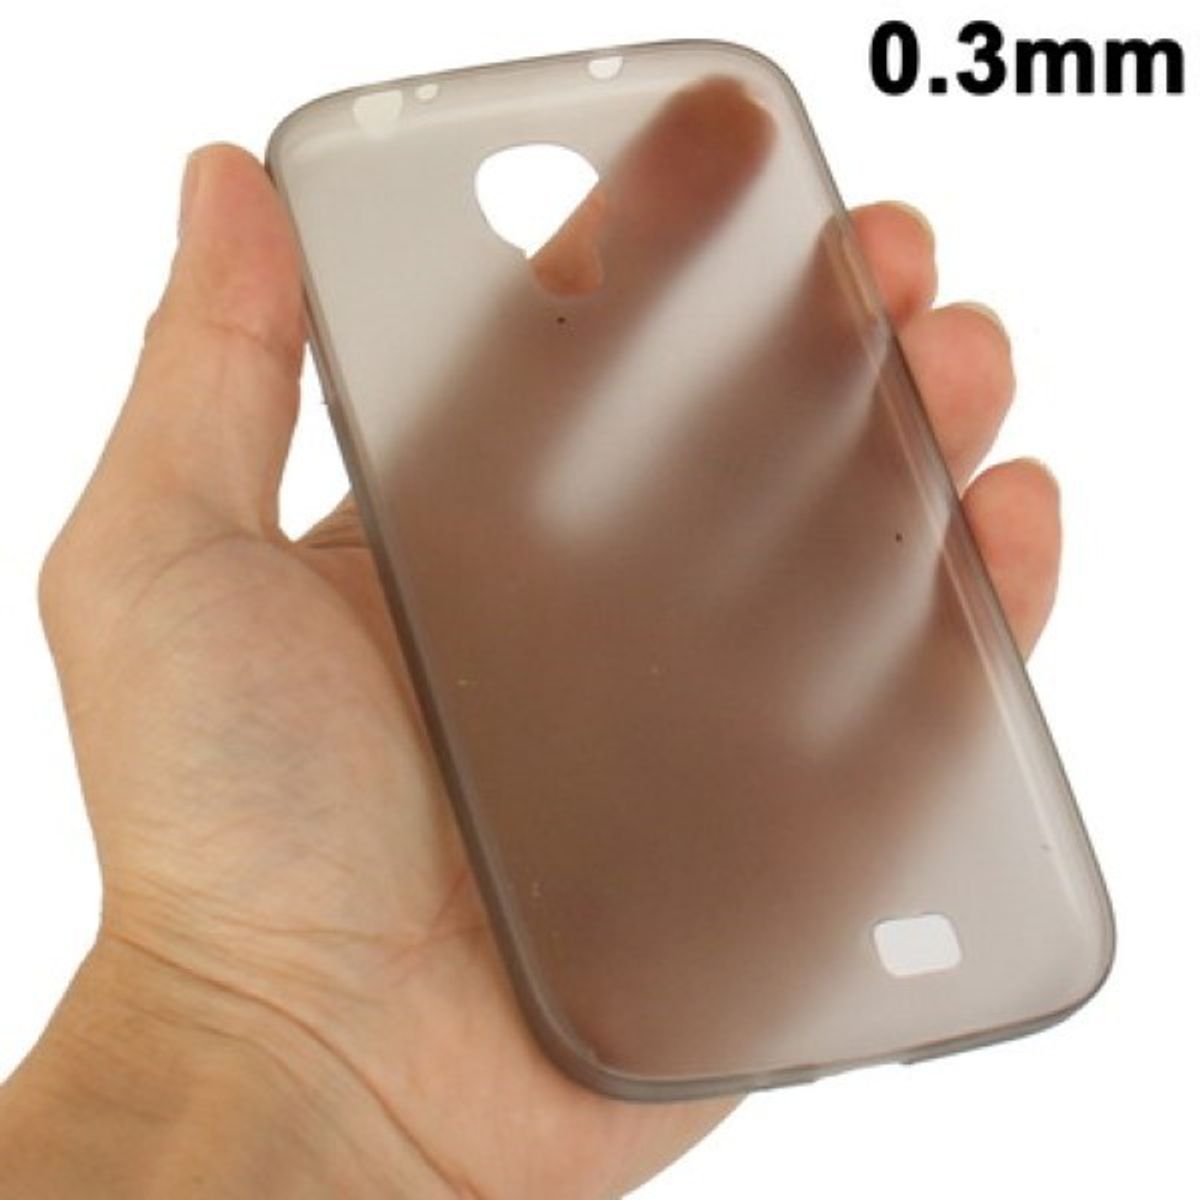 König Étui de protection design en TPU ultra-mince 0,3mm pour Samsung Galaxy S 4 i9500 (gris)